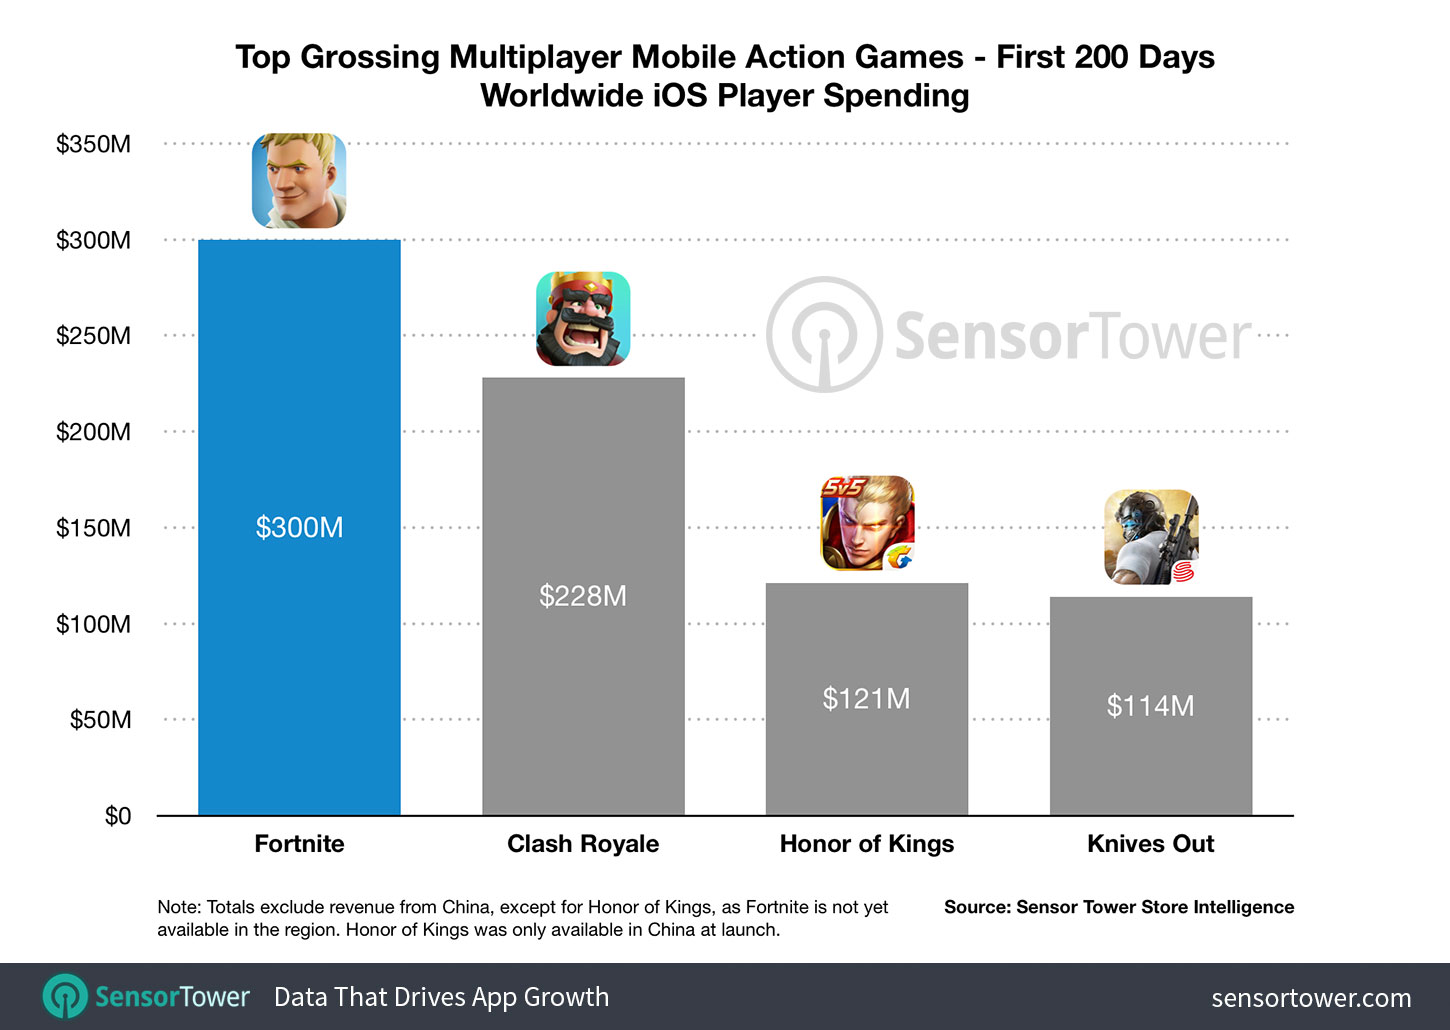 Juegos que más ingresos obtienen en la App Store (Octubre 2018)